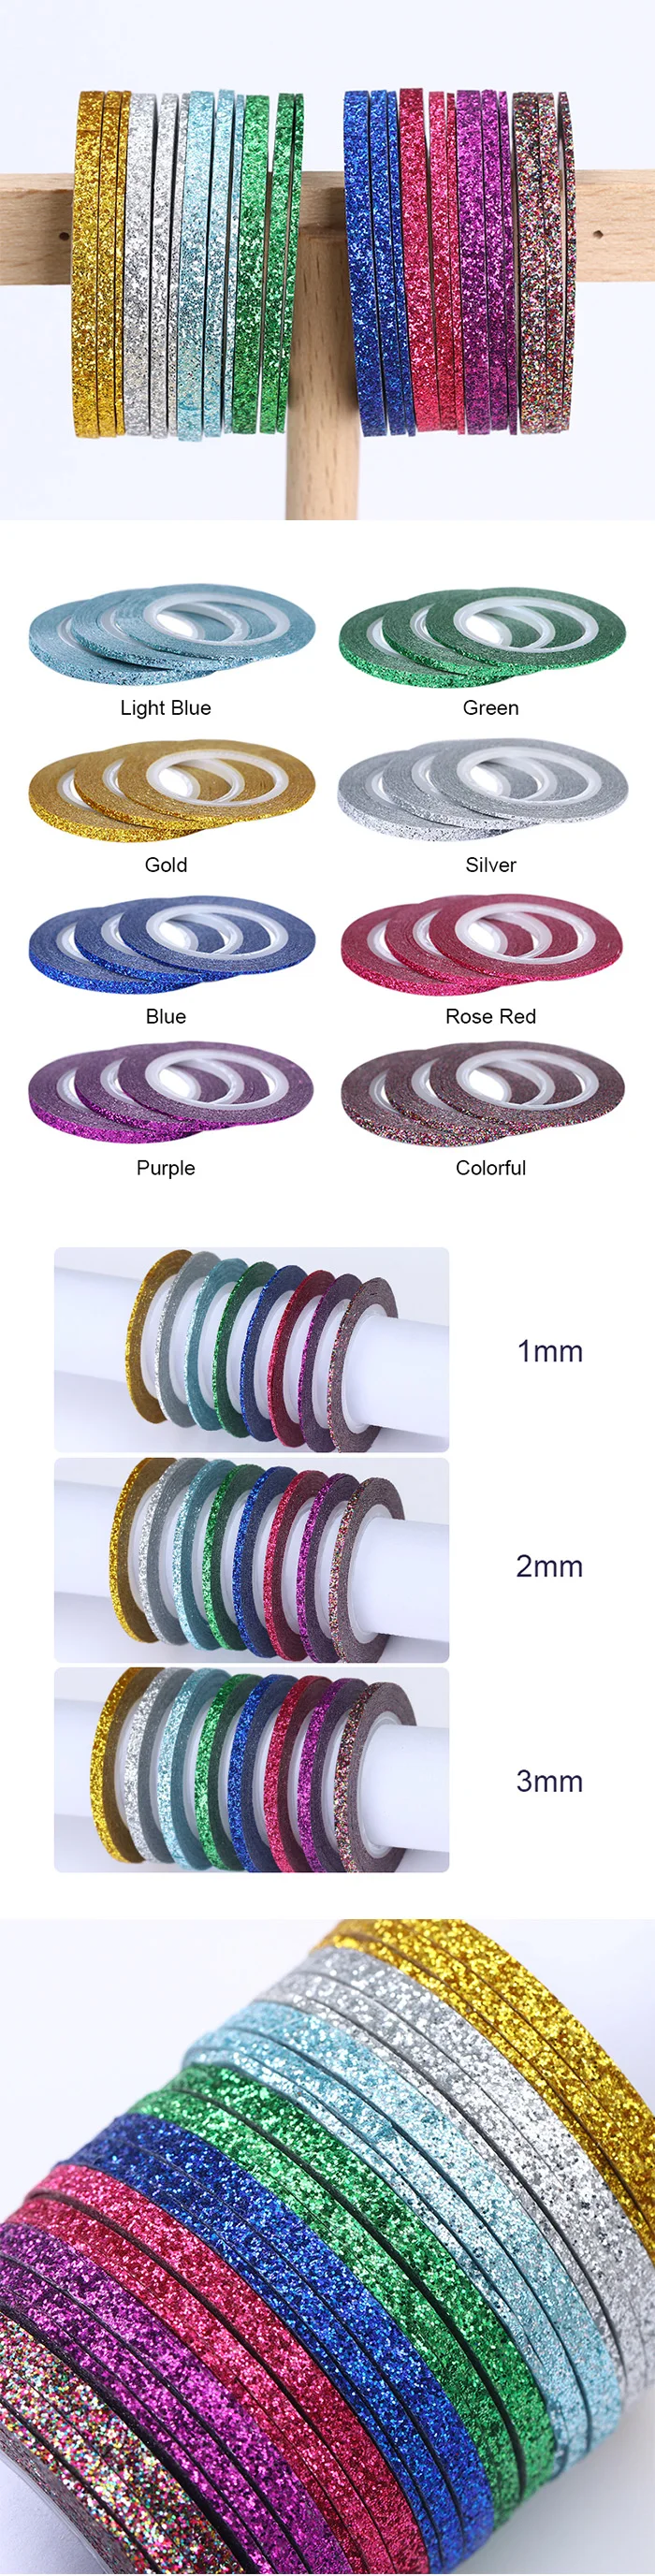 8 шт. матовые блестящие полоски для ногтей линия 1 мм 2 мм 3 мм цветной дизайн ногтей DIY клейкие наклейки маникюрные наклейки для ногтей набор